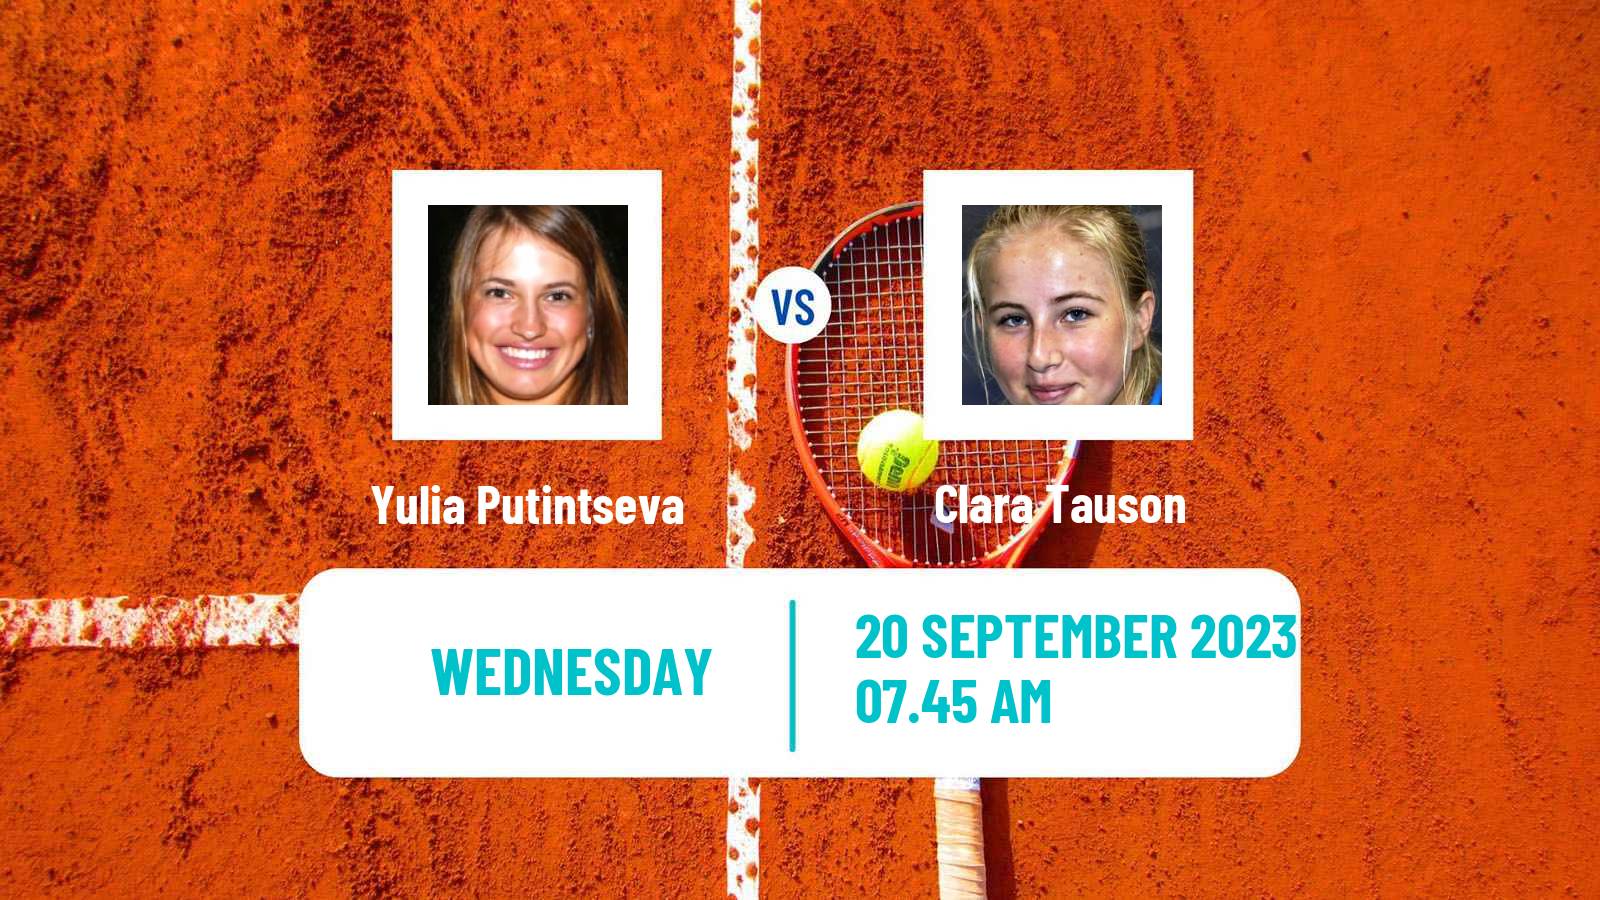 Tennis WTA Guangzhou Yulia Putintseva - Clara Tauson